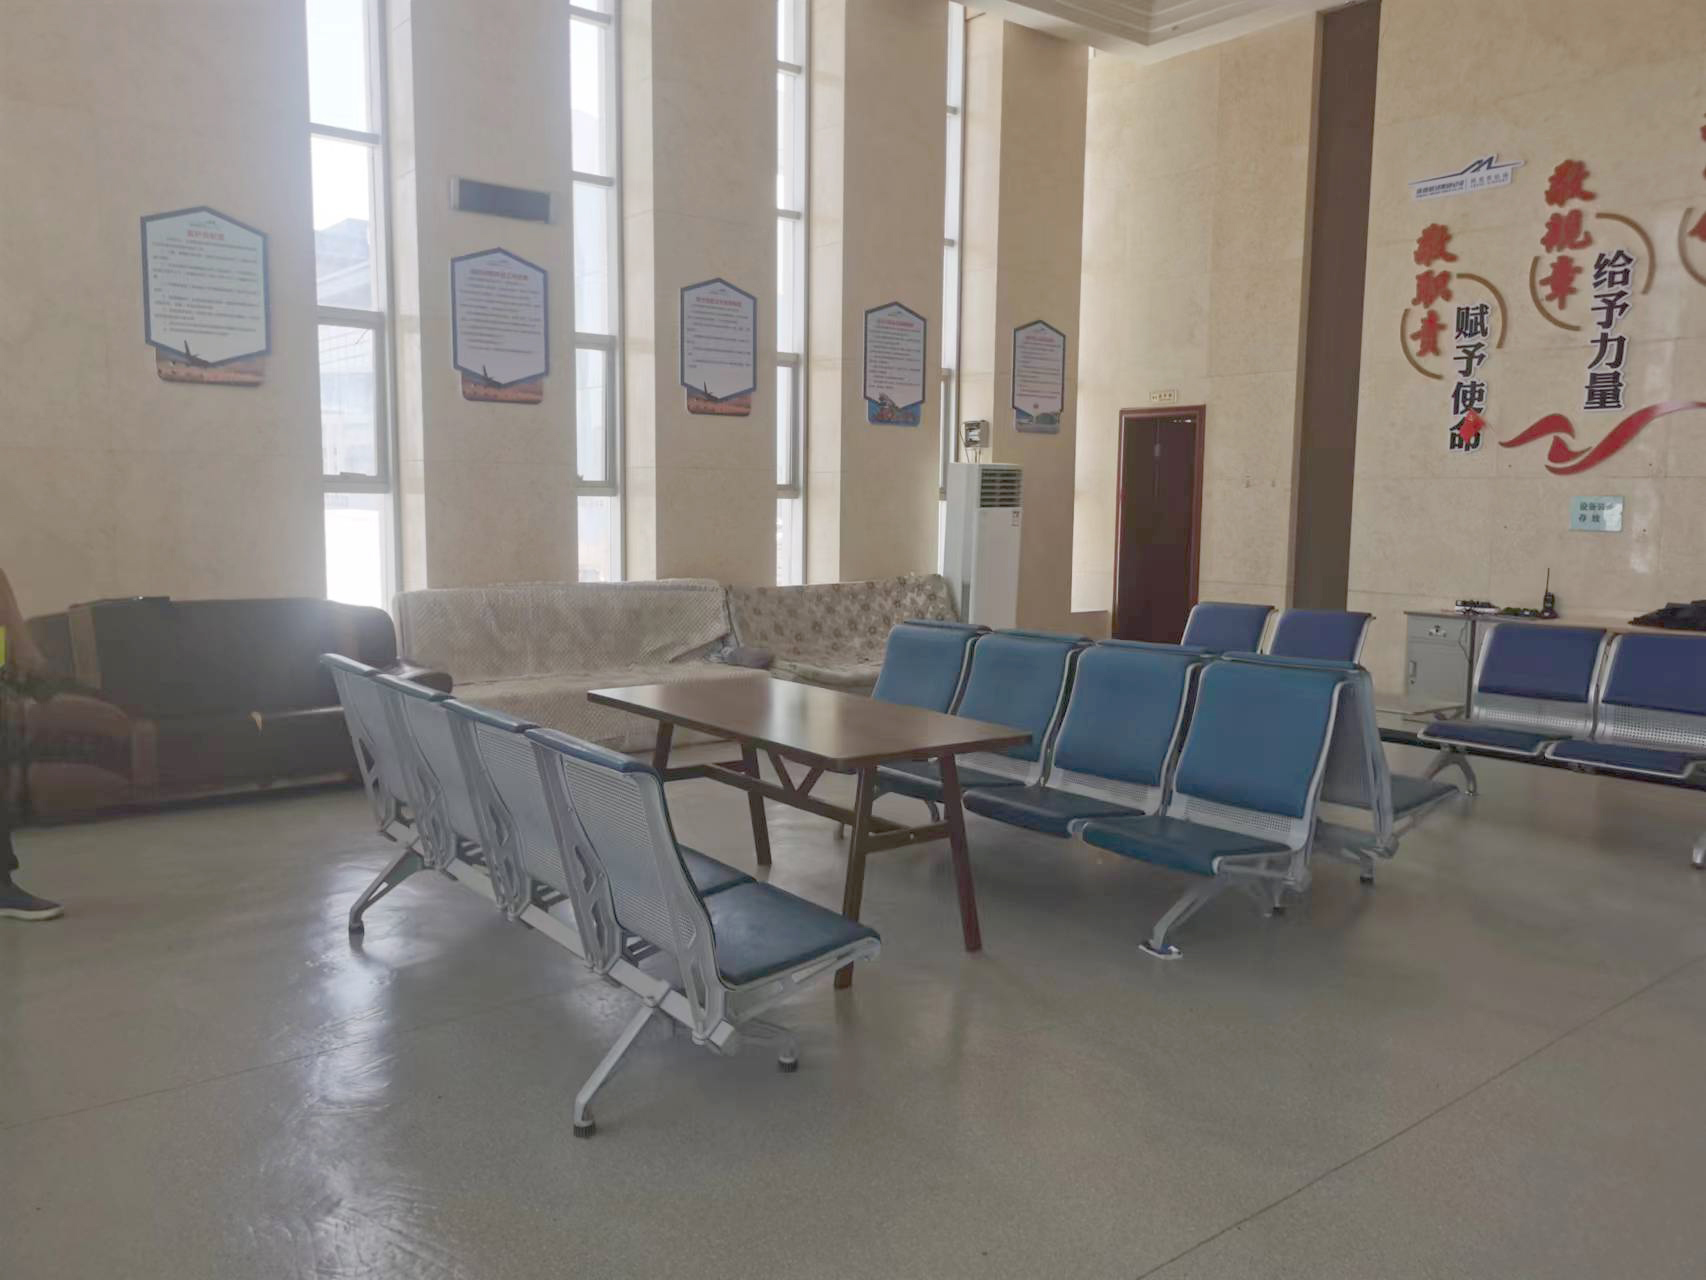 新疆机场集团新增两个“民航职工站坪共享休息室示范点”